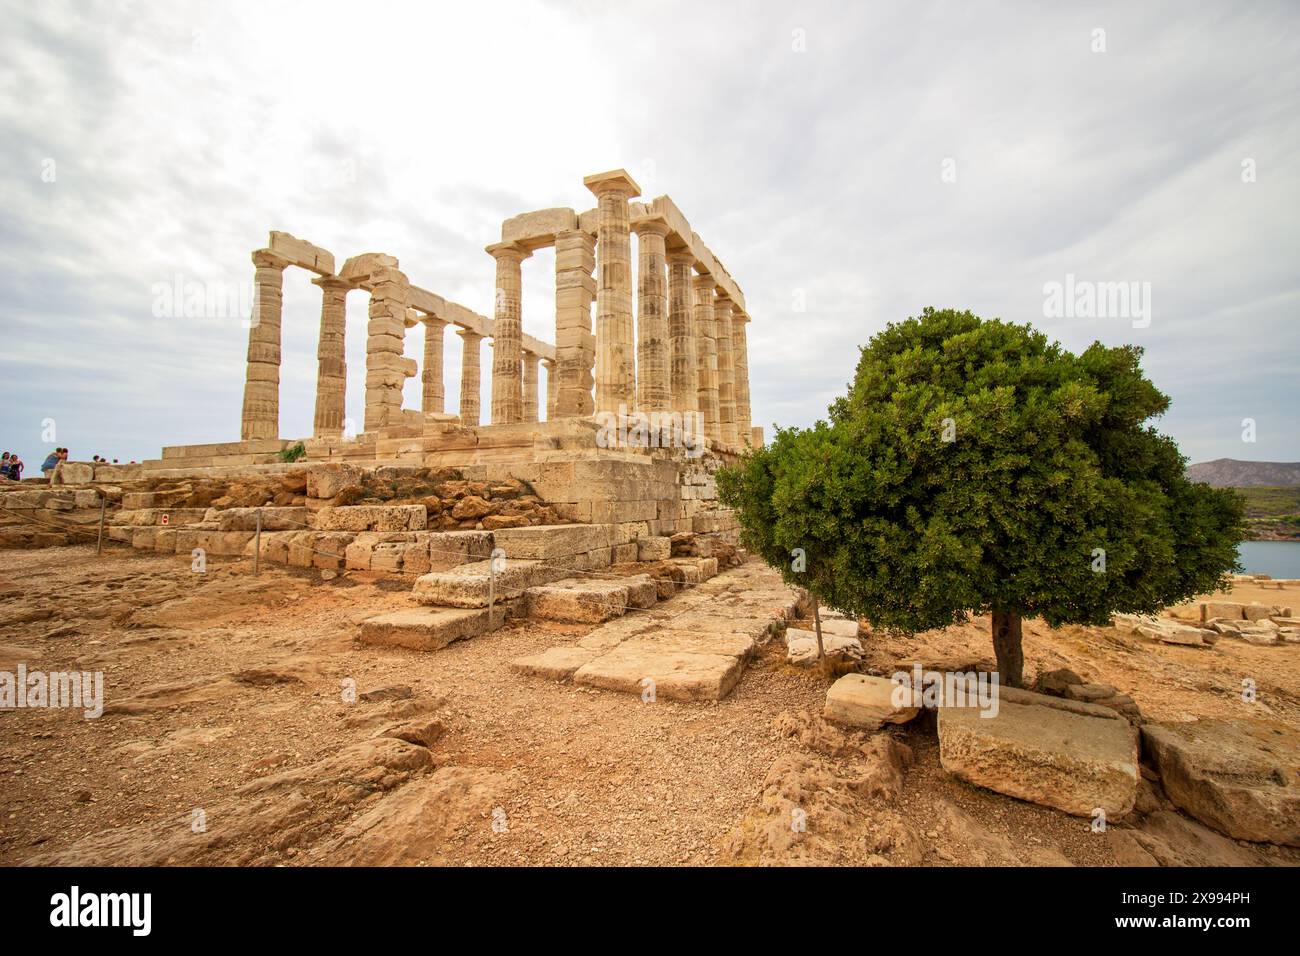 Ruines du temple grec antique ciel nuageux avec des paysages spectaculaires et des restes de colonnes Banque D'Images